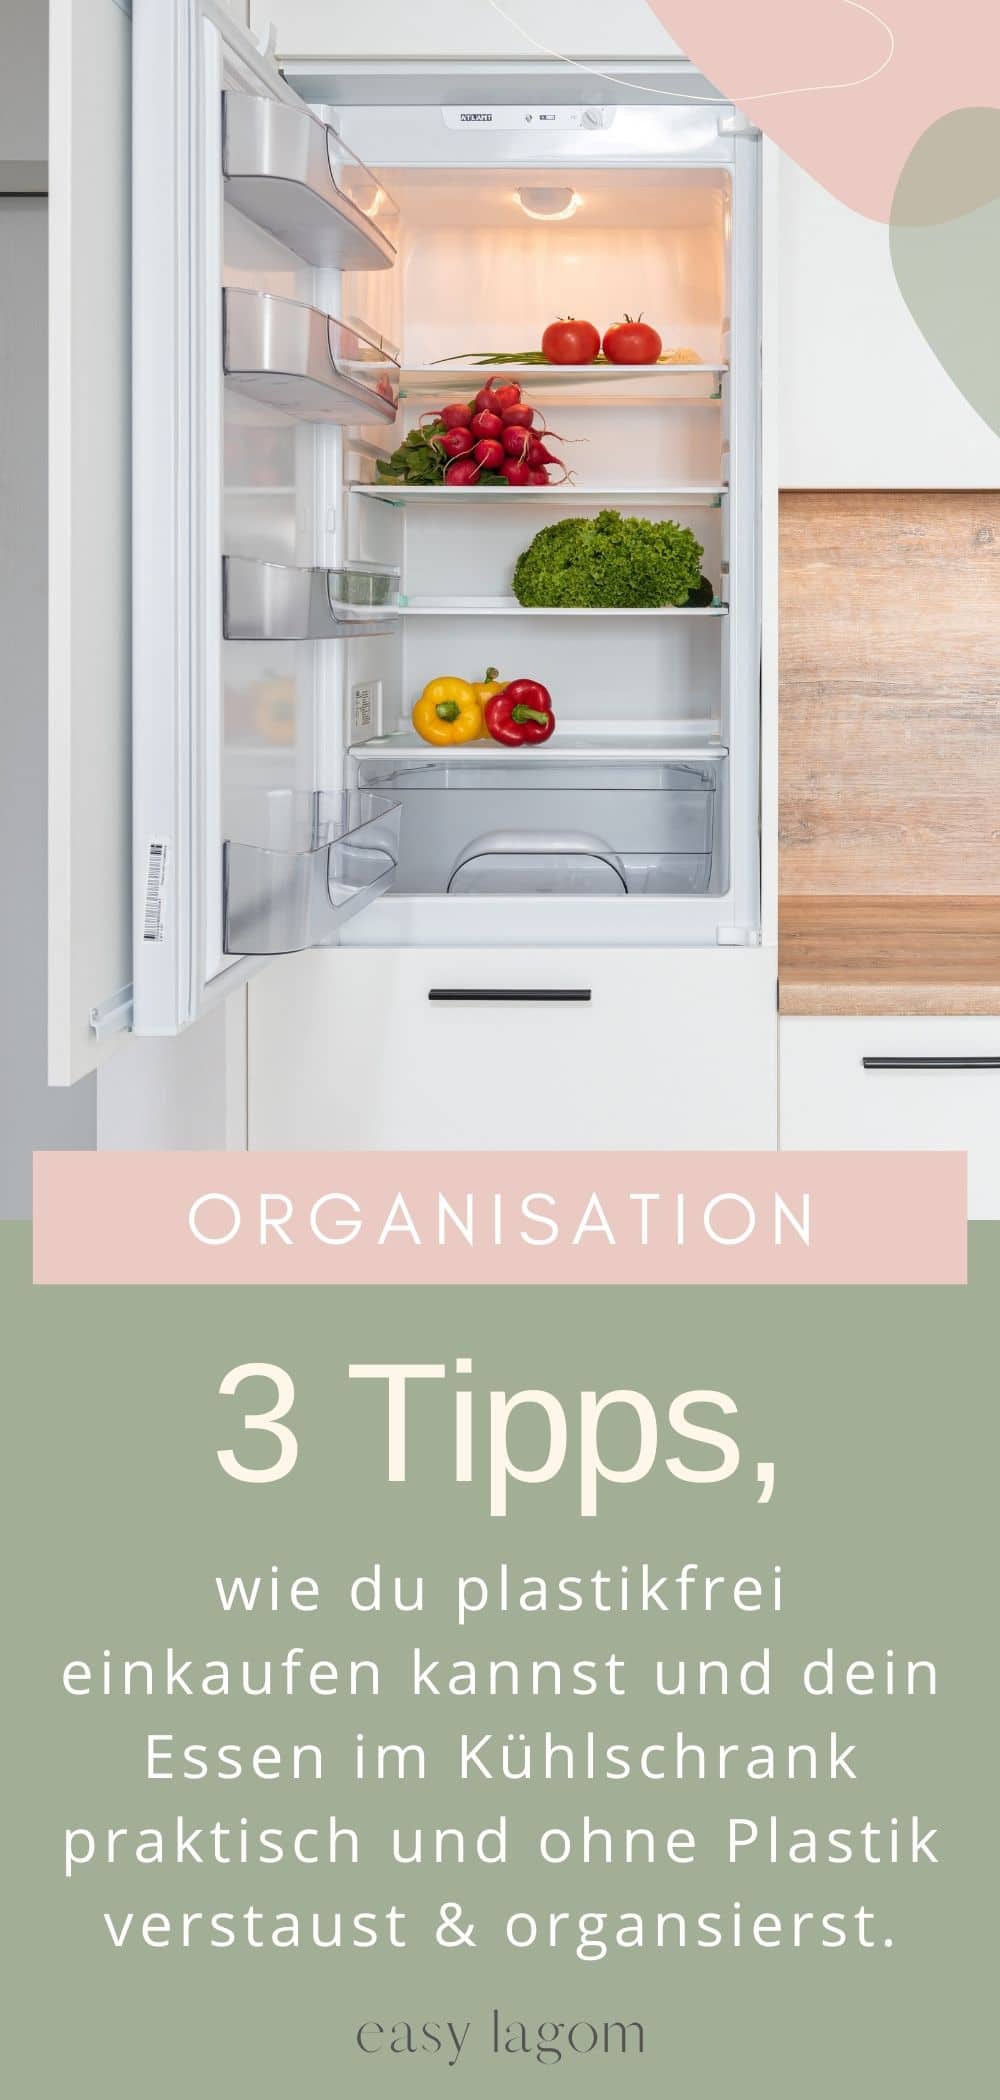 3 Tipps, wie du plastikfrei einkaufen kannst und dein Essen im Kühlschrank praktisch und ohne Plastik verstaust organsierst